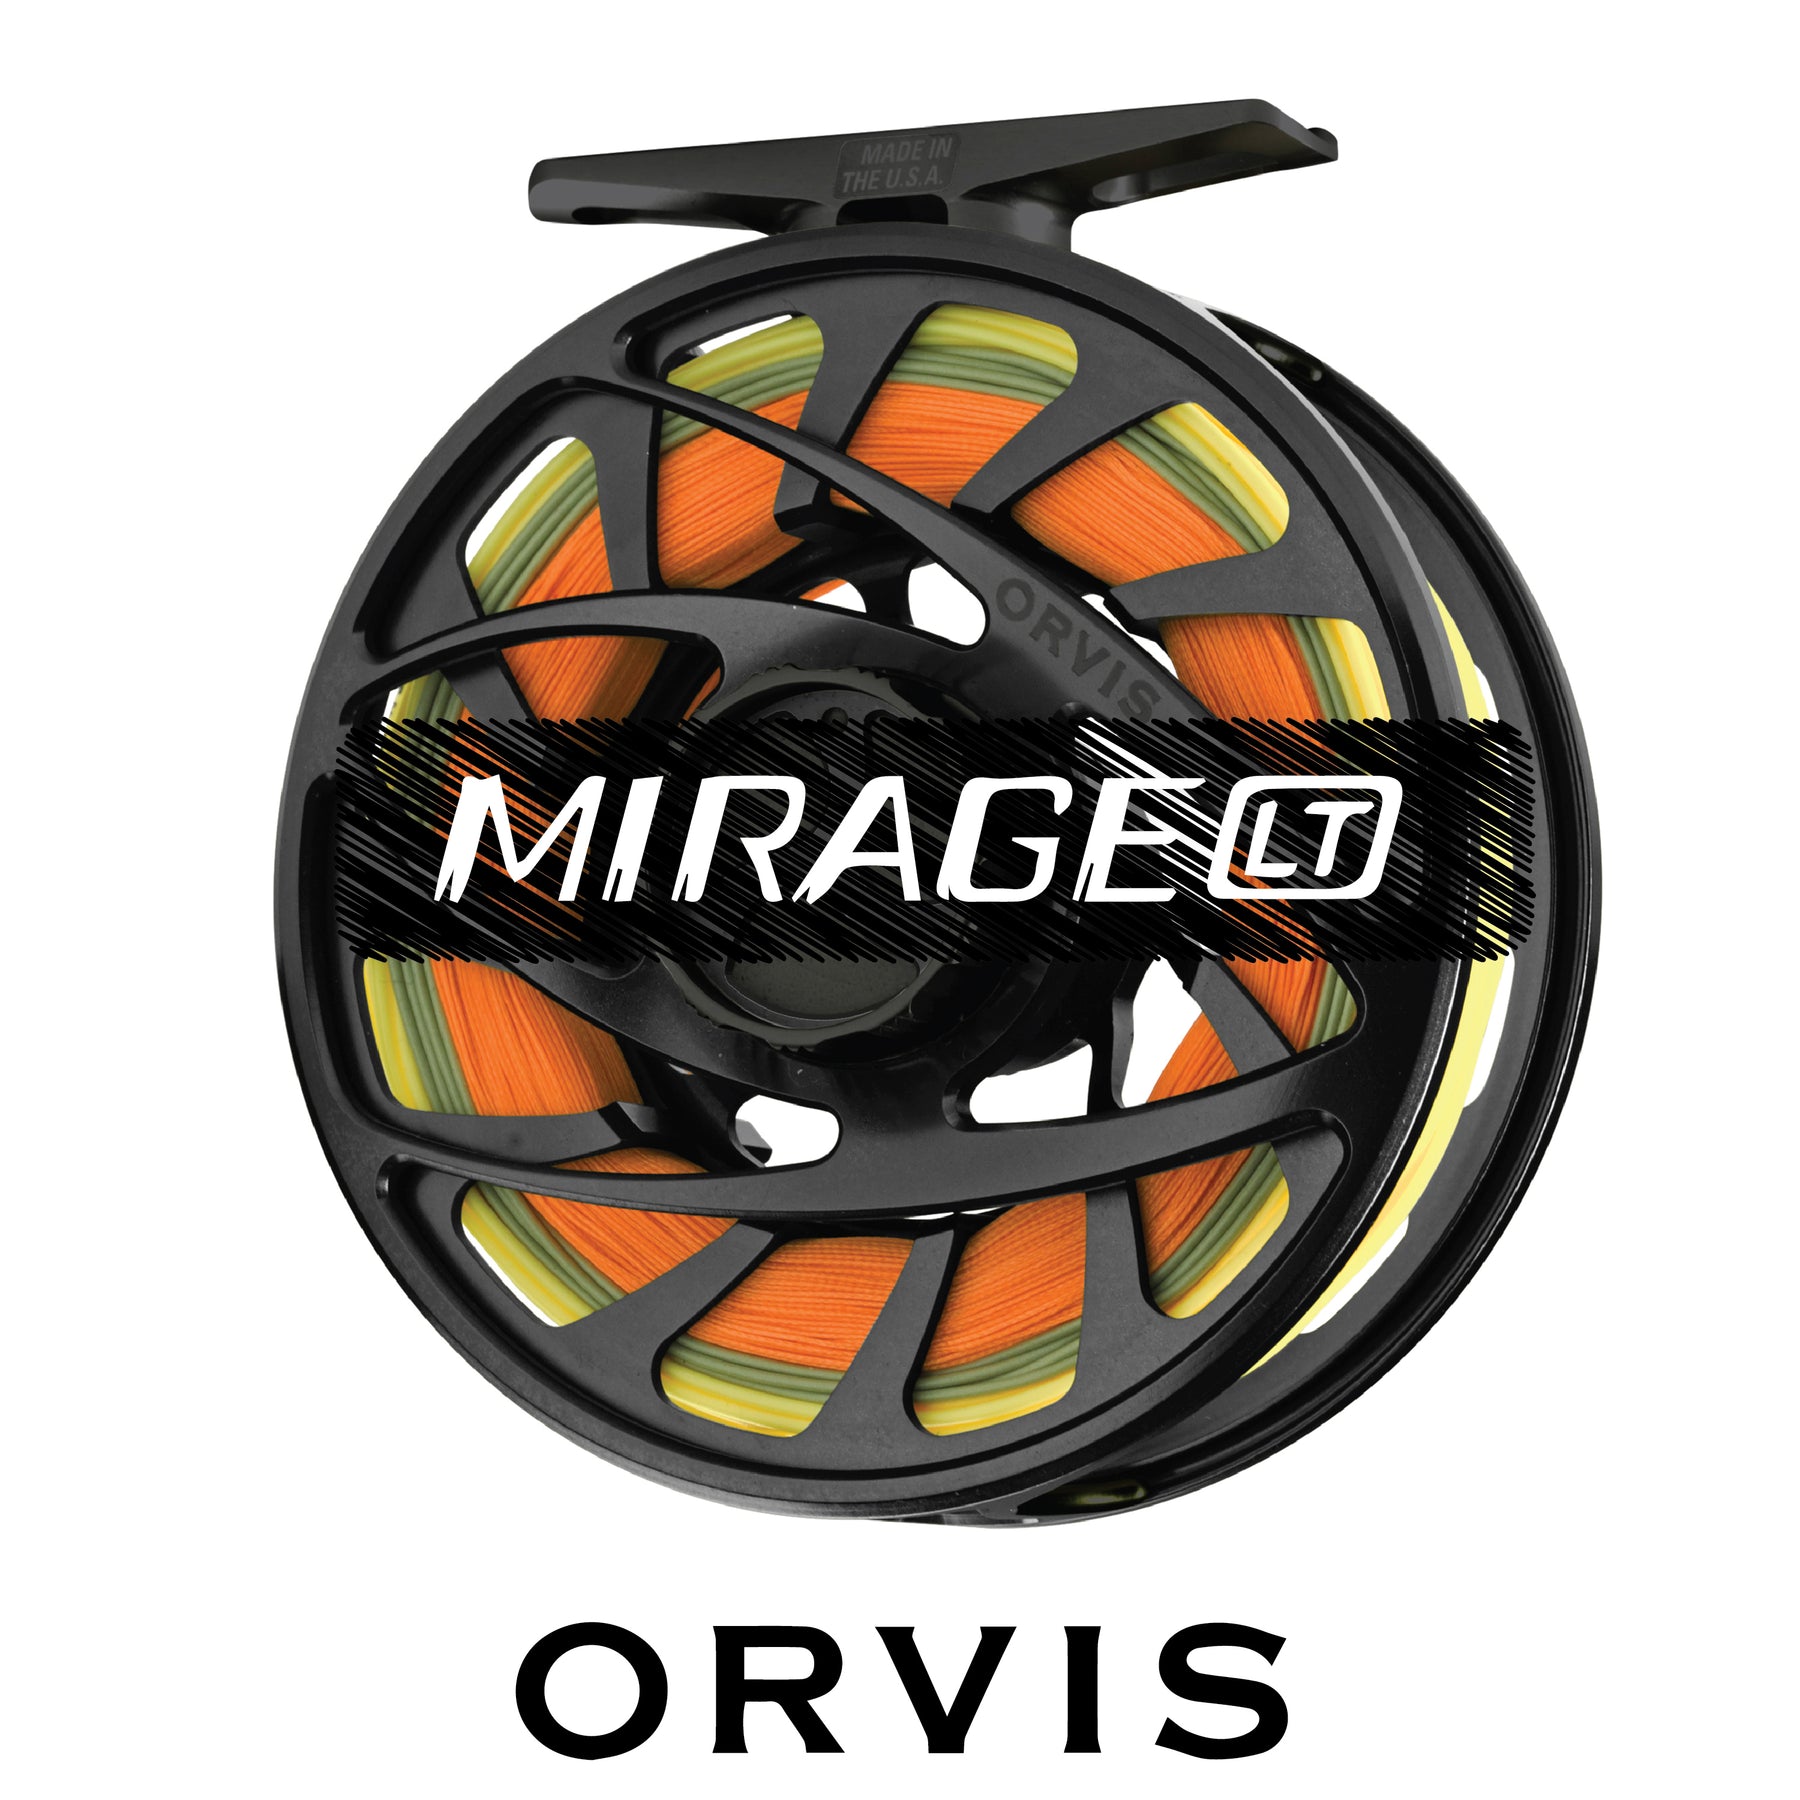 Orvis Mirage LT Fly Reel - Blackout - III